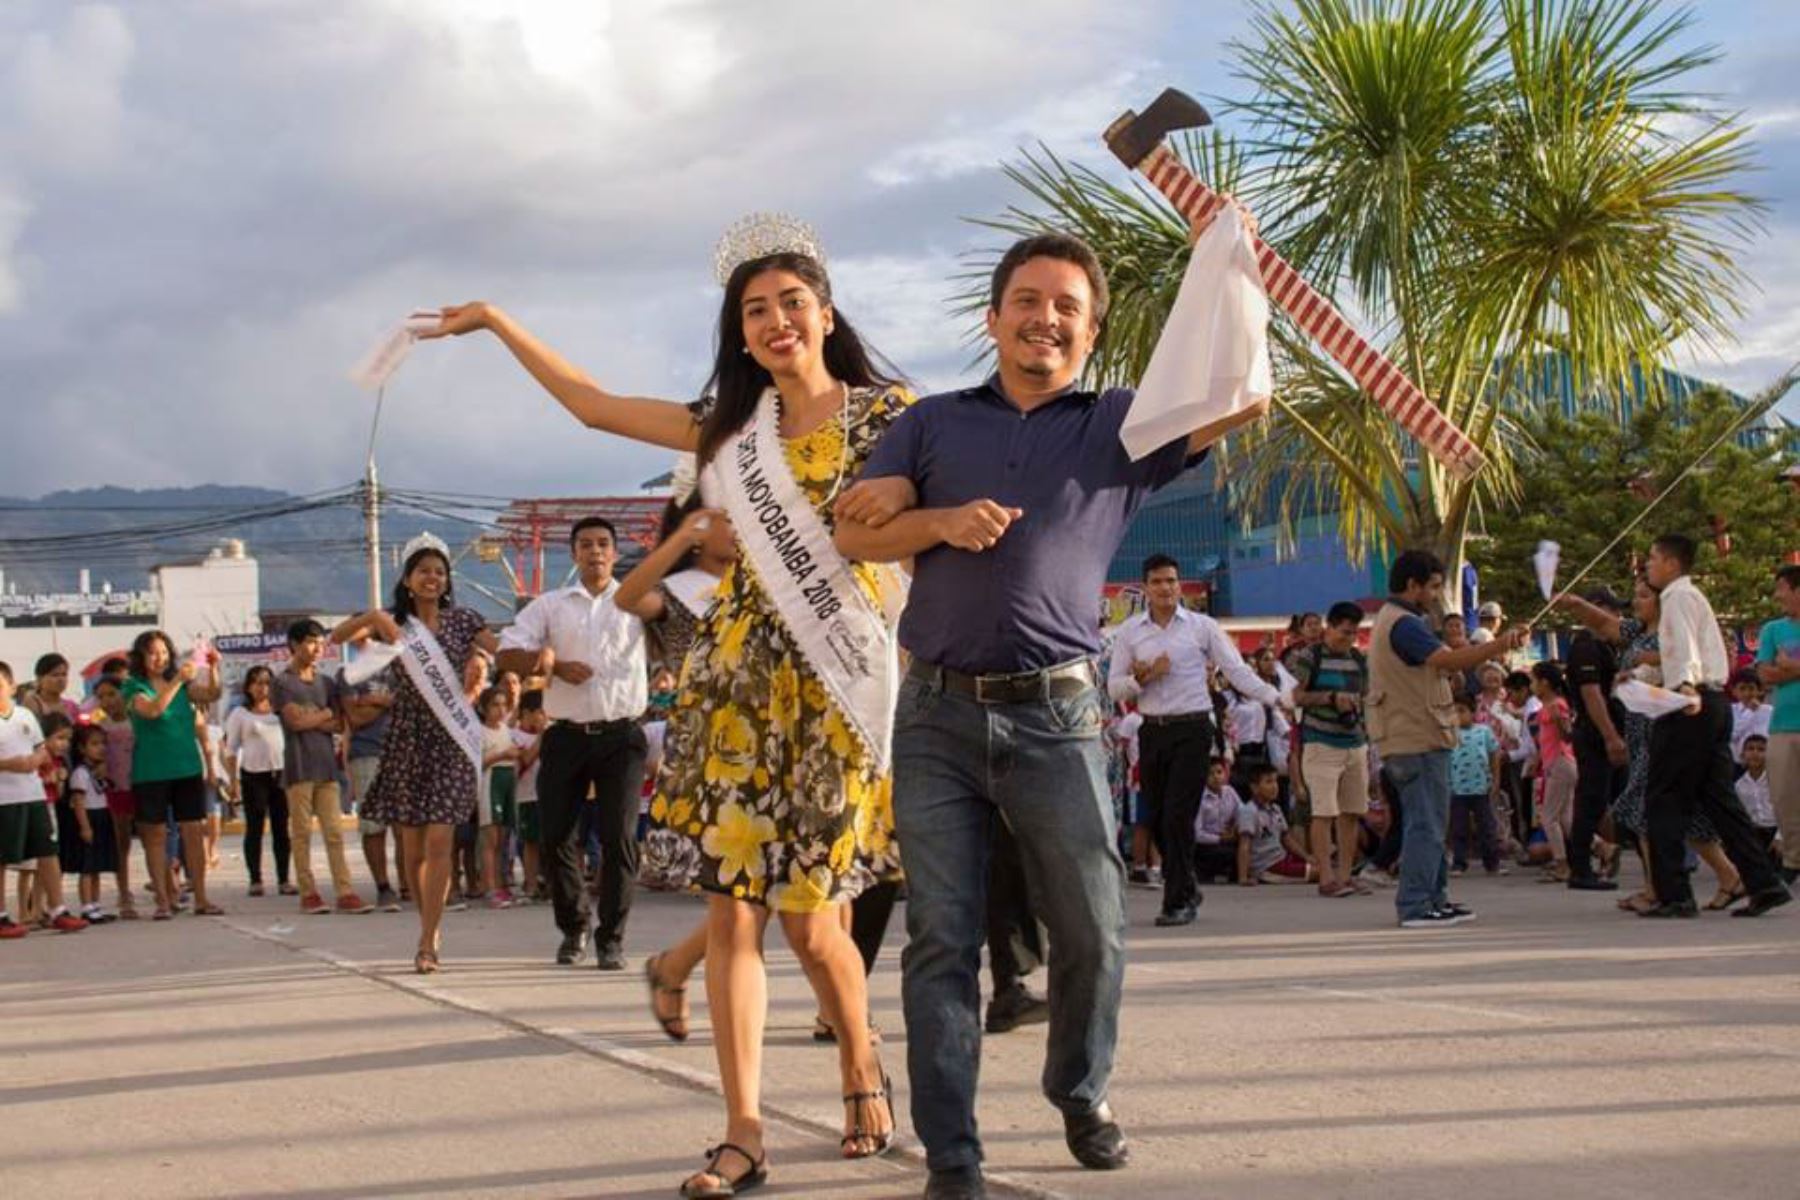 Con festival y paseos turísticos Moyobamba, capital de región San Martín, celebrará su aniversario ANDINA